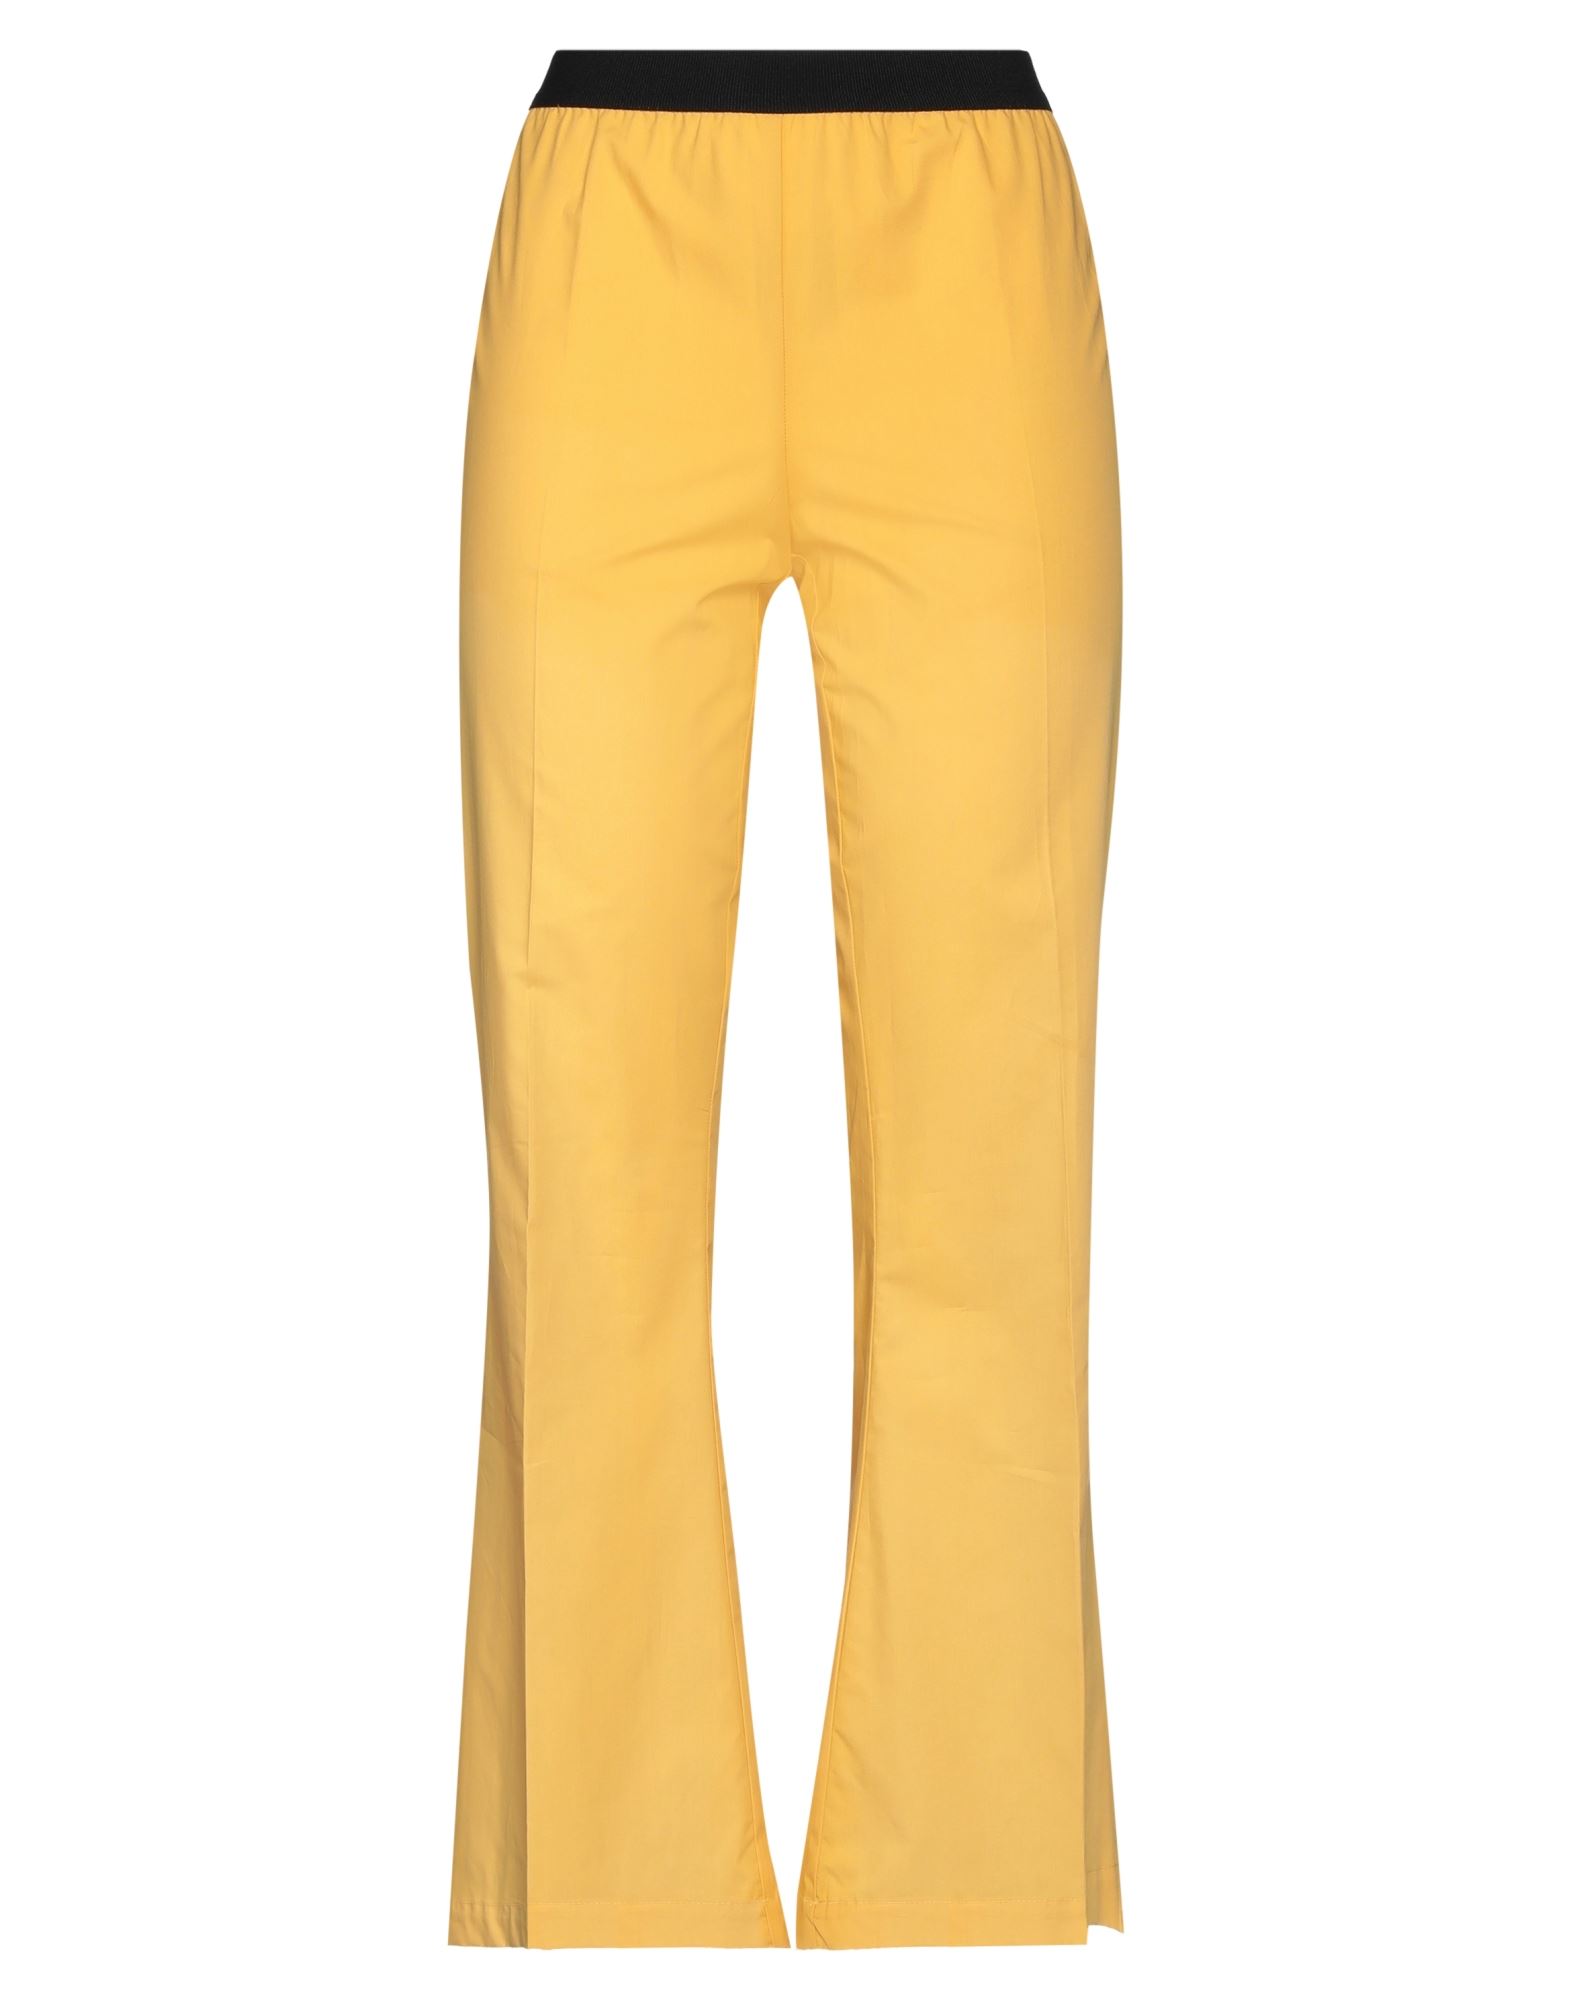 Meimeij Pants In Yellow